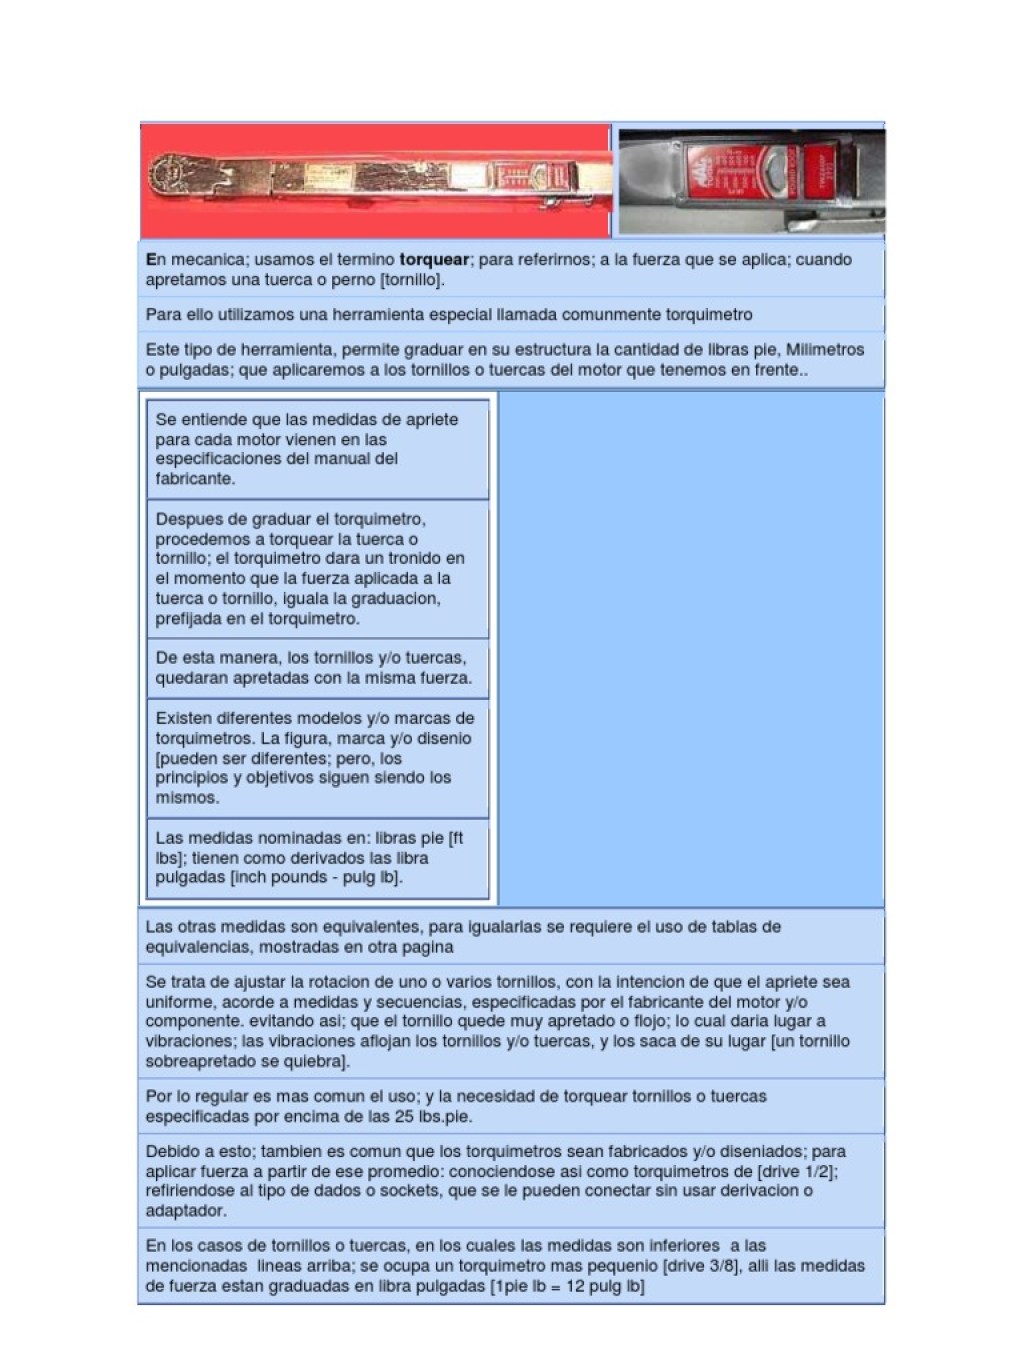 Picture of: Torque de Motor Ford   PDF  Tornillo  Herramientas